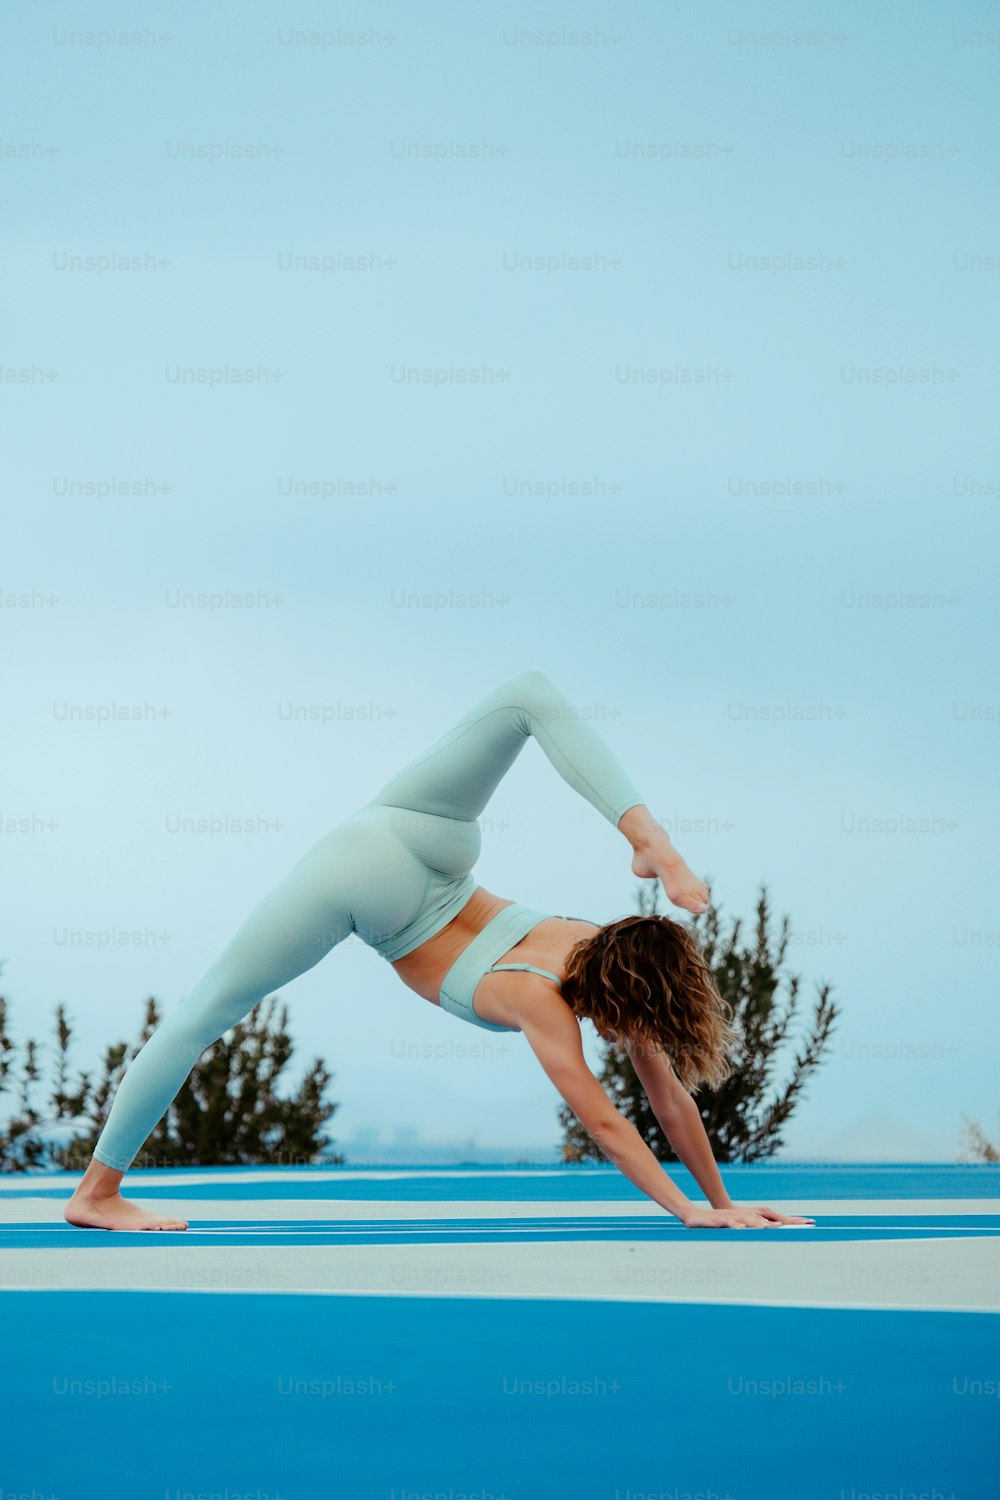 uma mulher fazendo uma pose de ioga em uma superfície azul